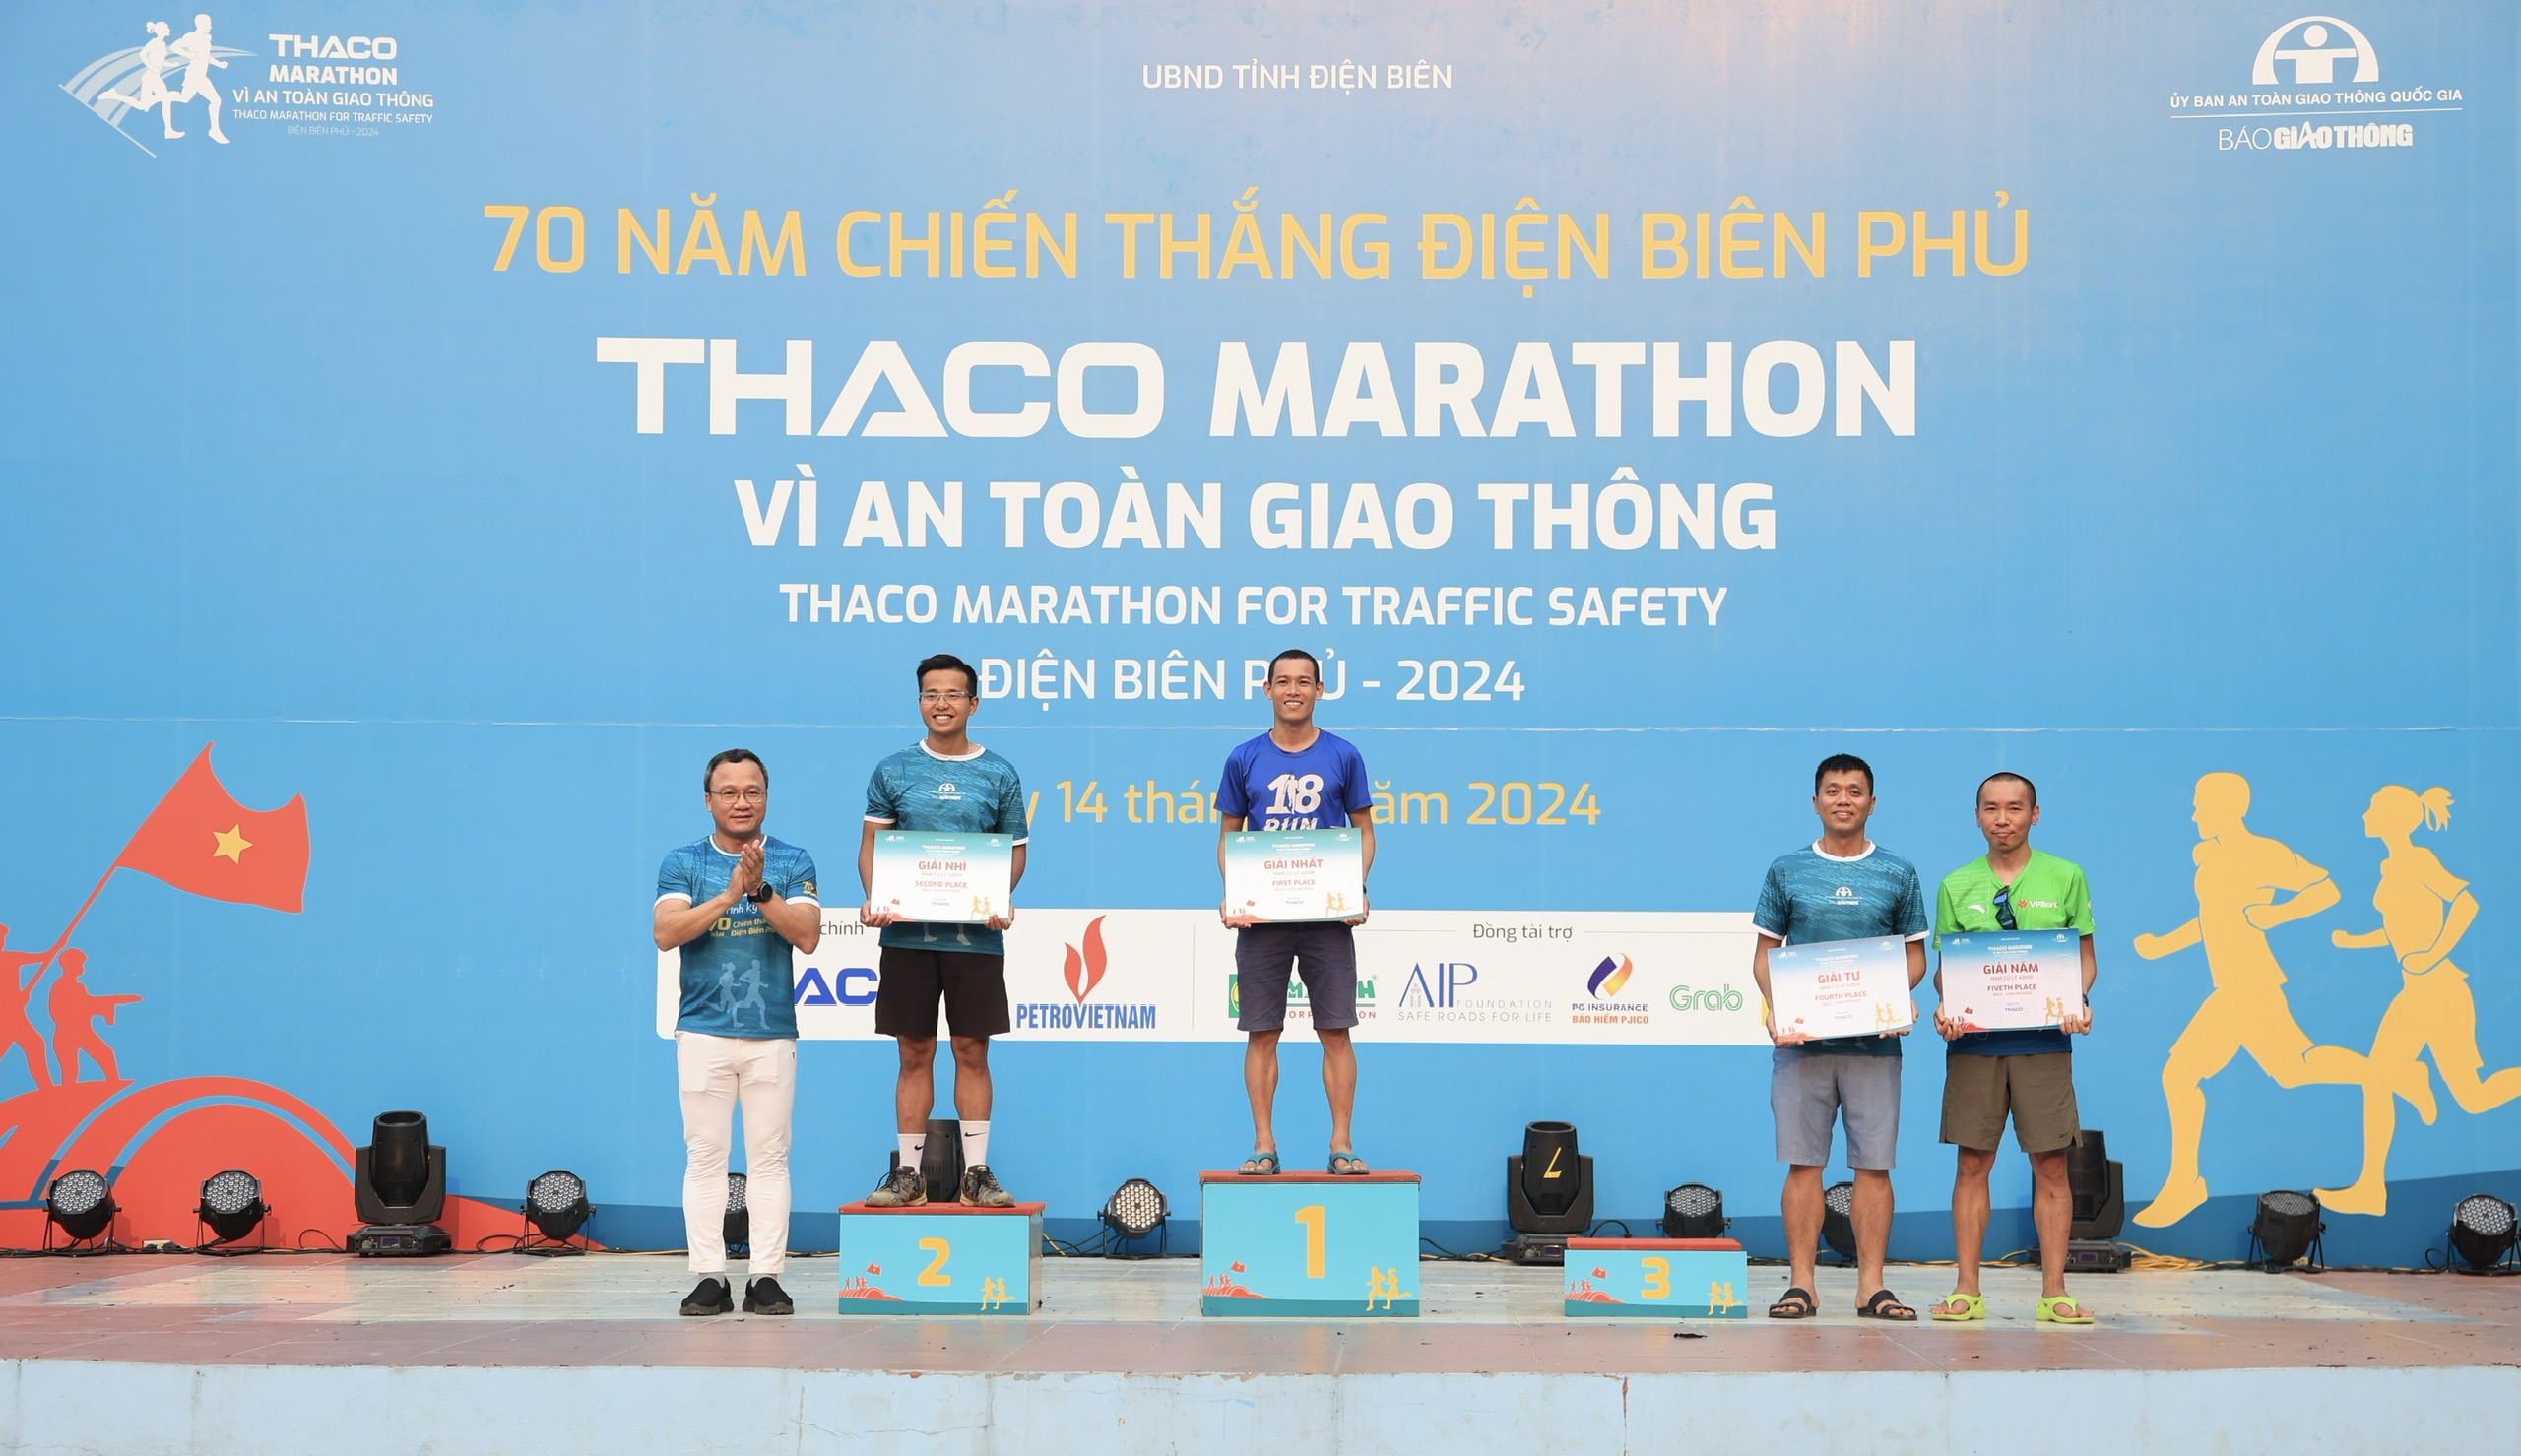 Trực tiếp: Giải THACO Marathon vì ATGT - Điện Biên Phủ 2024 thành công rực rỡ- Ảnh 5.